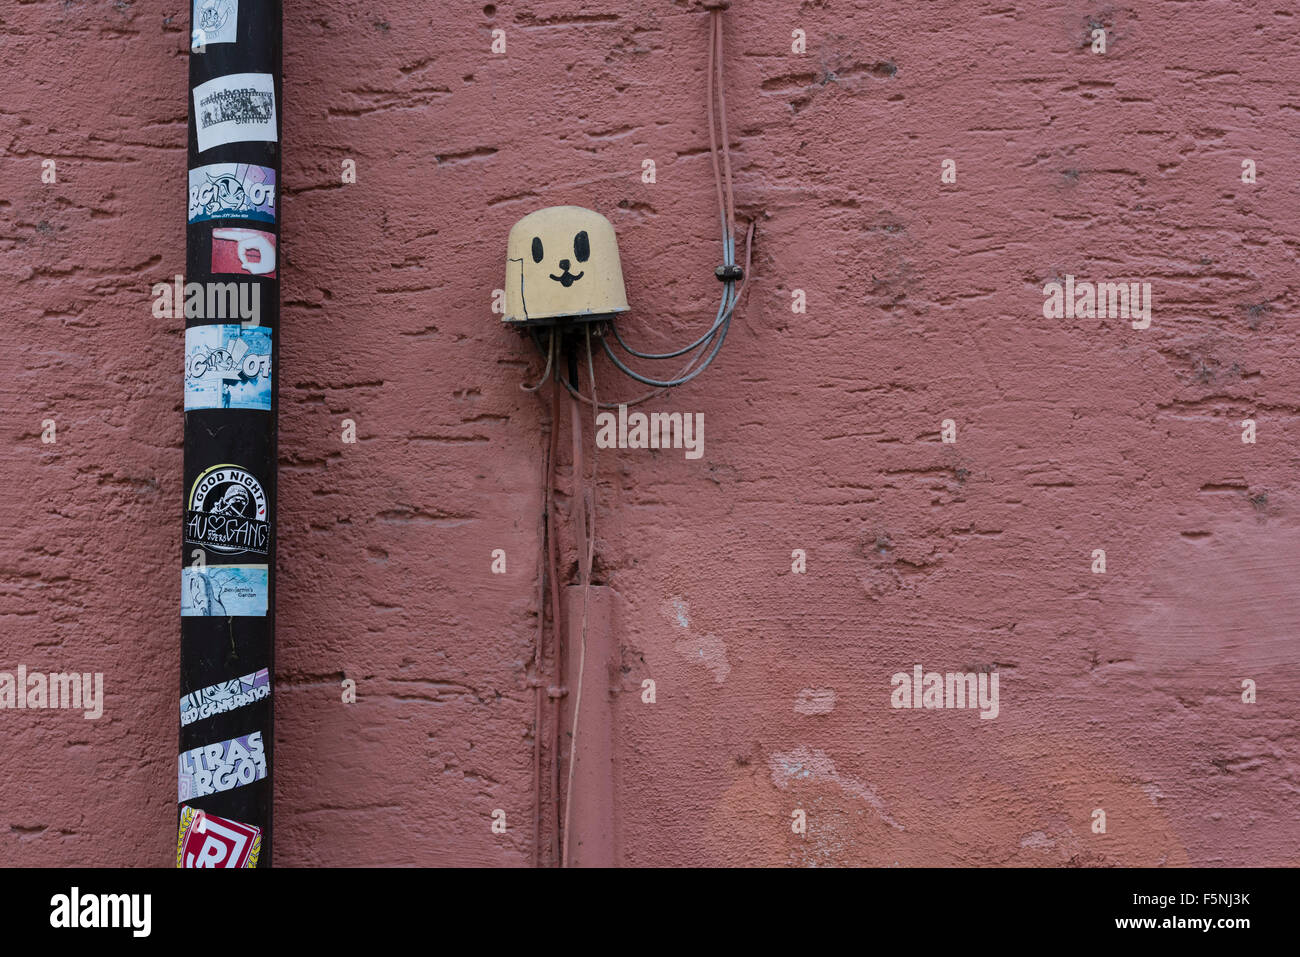 Distributeur pour les câbles électriques à l'extérieur de la paroi d'une maison d'habitation dans la vieille ville de Ratisbonne, Allemagne. Banque D'Images